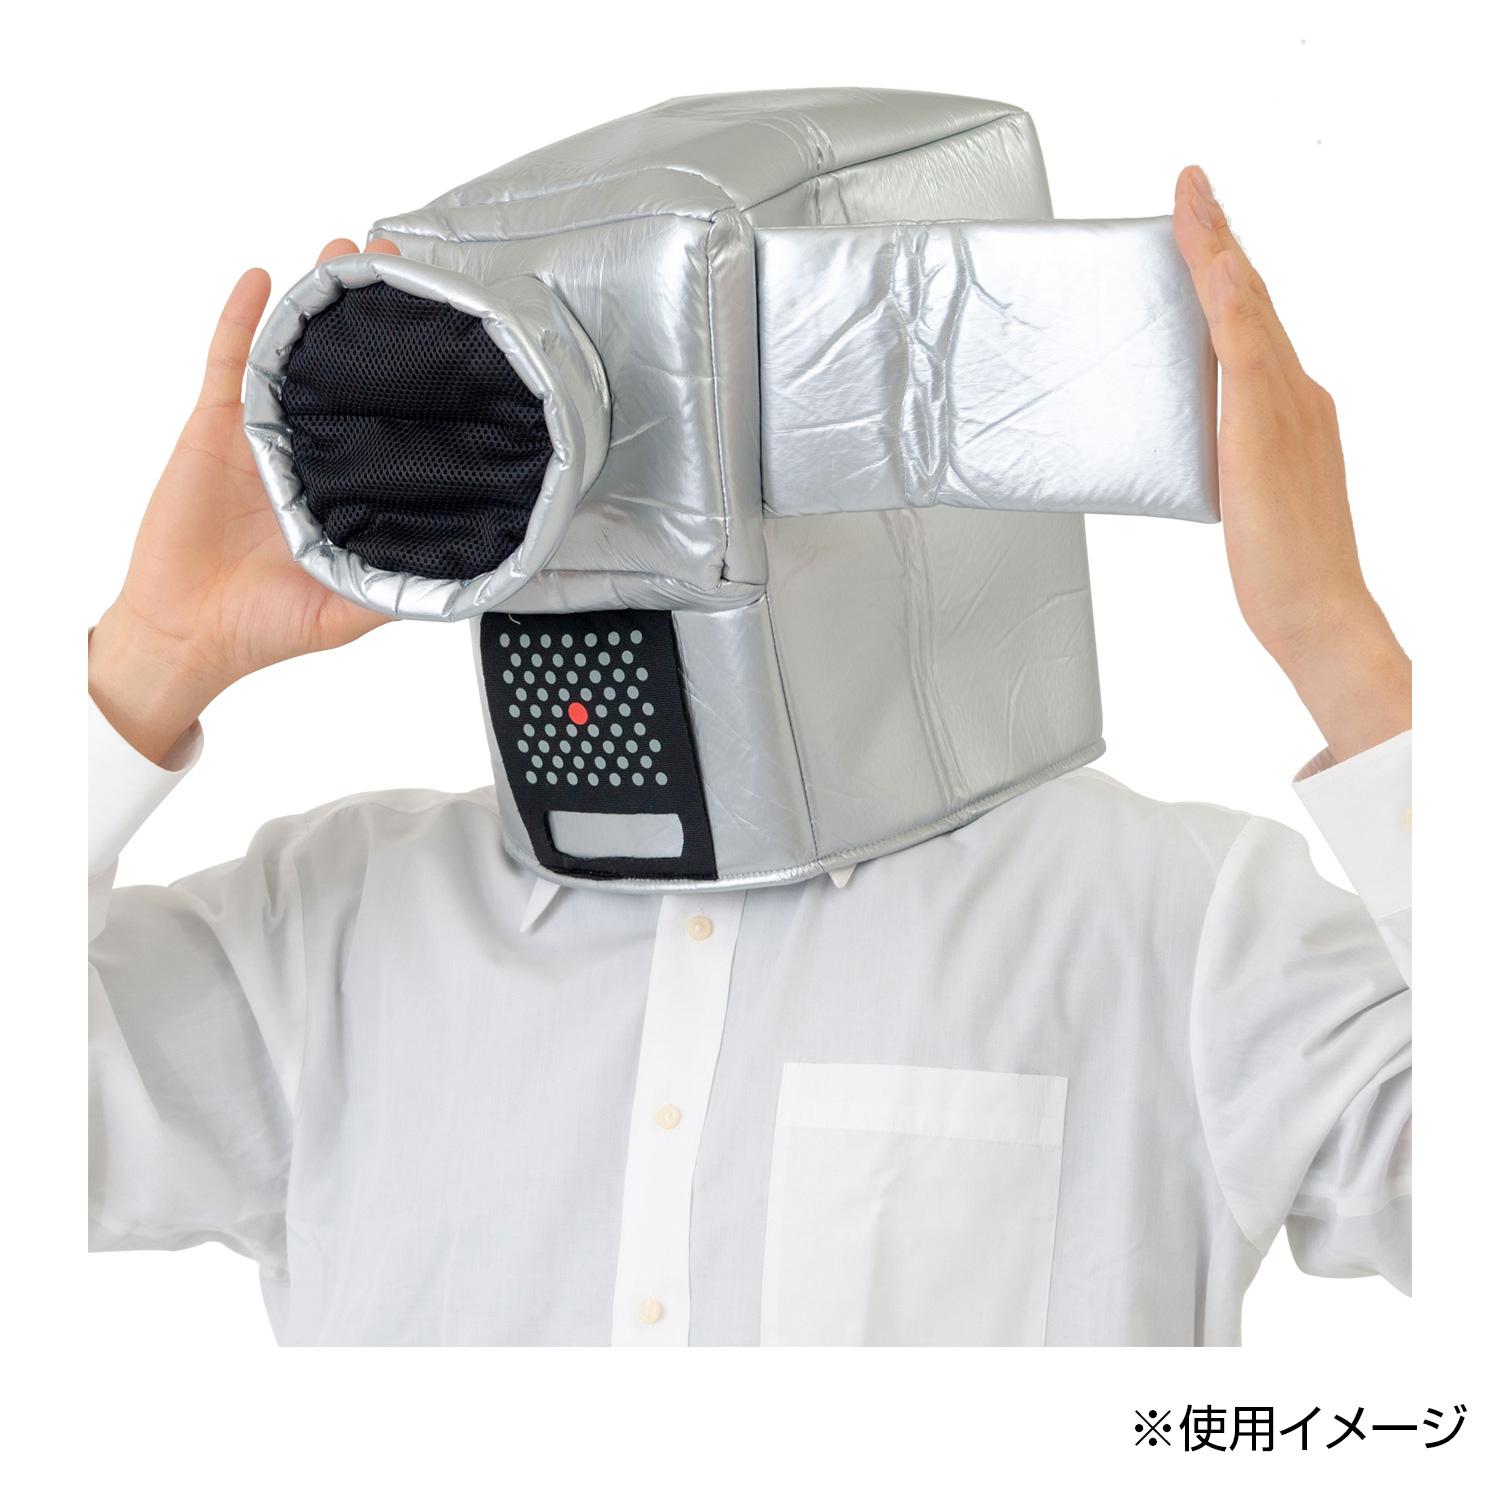 【送料無料】おもしろキャップ カメラマンマスク 6730